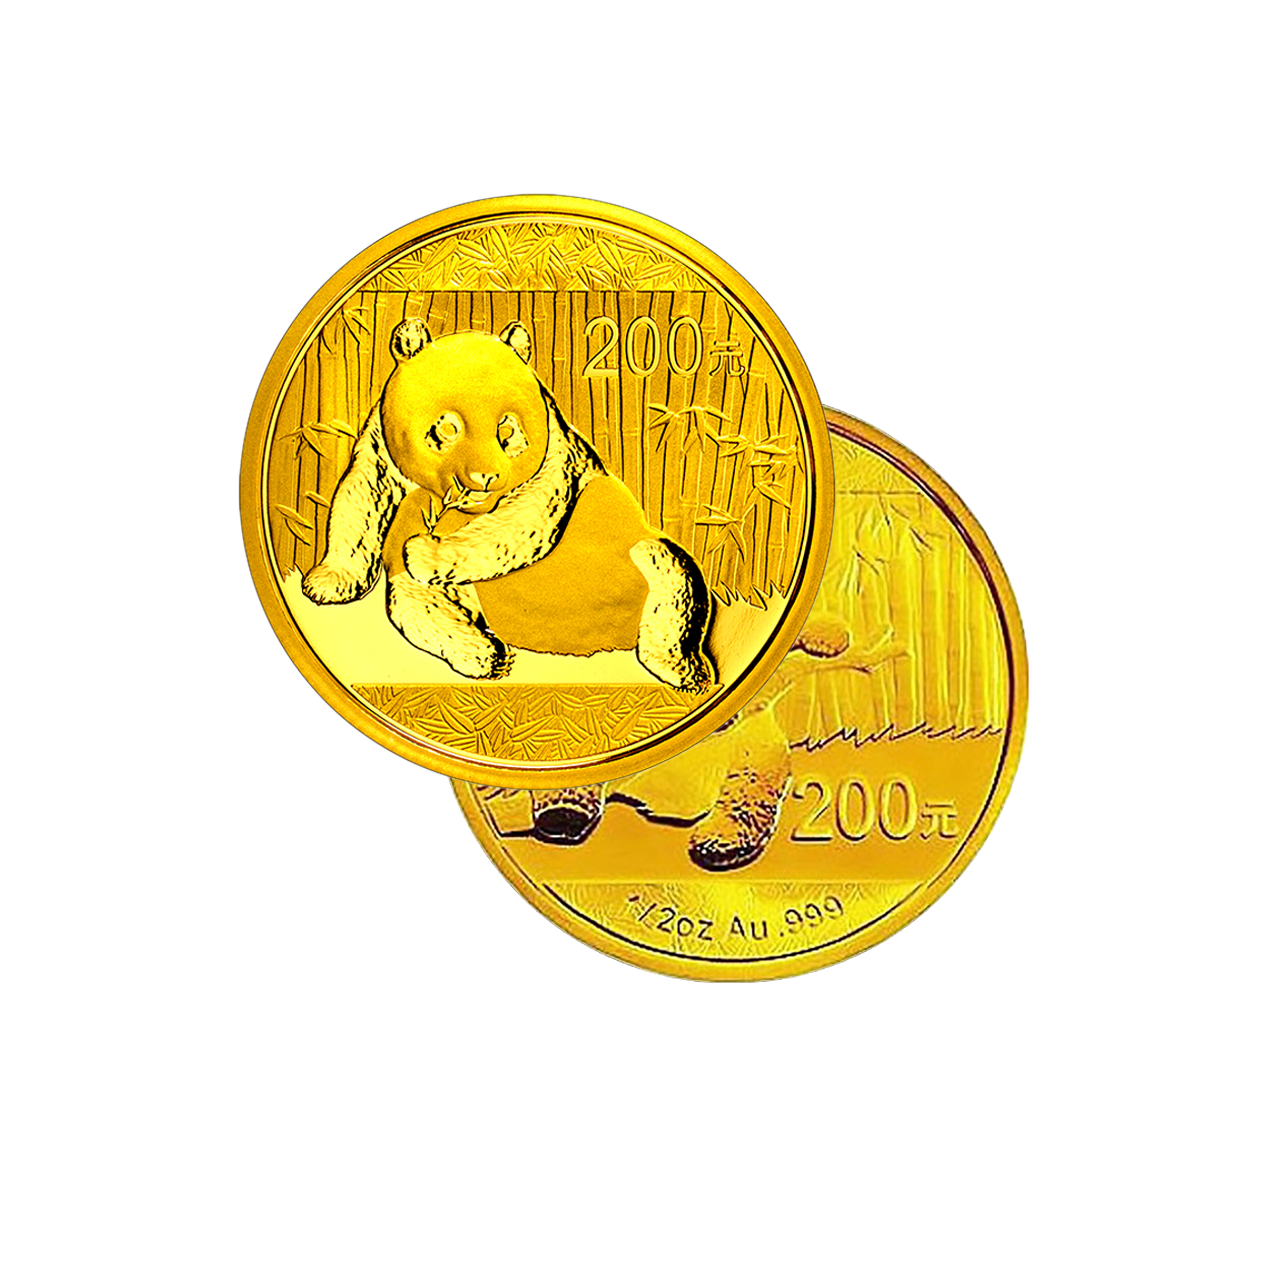 Panda (various Years) - China 1/2 oz gold coin